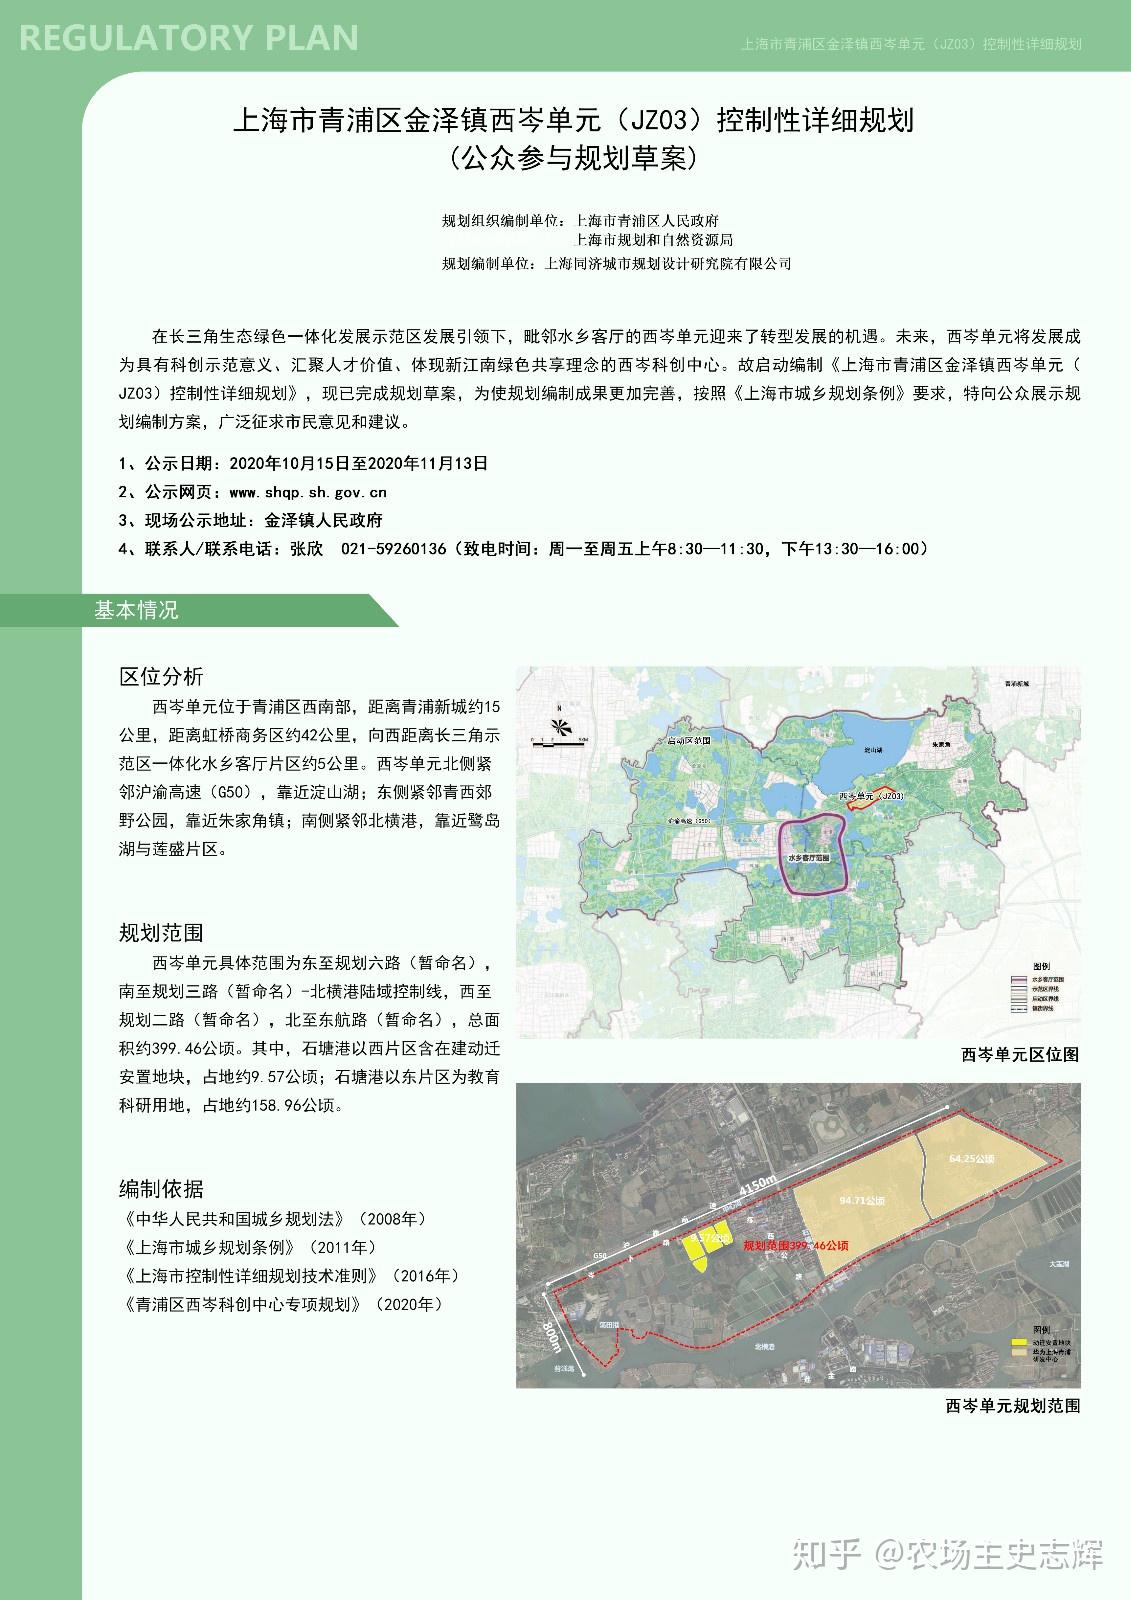 上海市青浦区金泽镇西岑单元jz03控制性详细规划华为研发基地